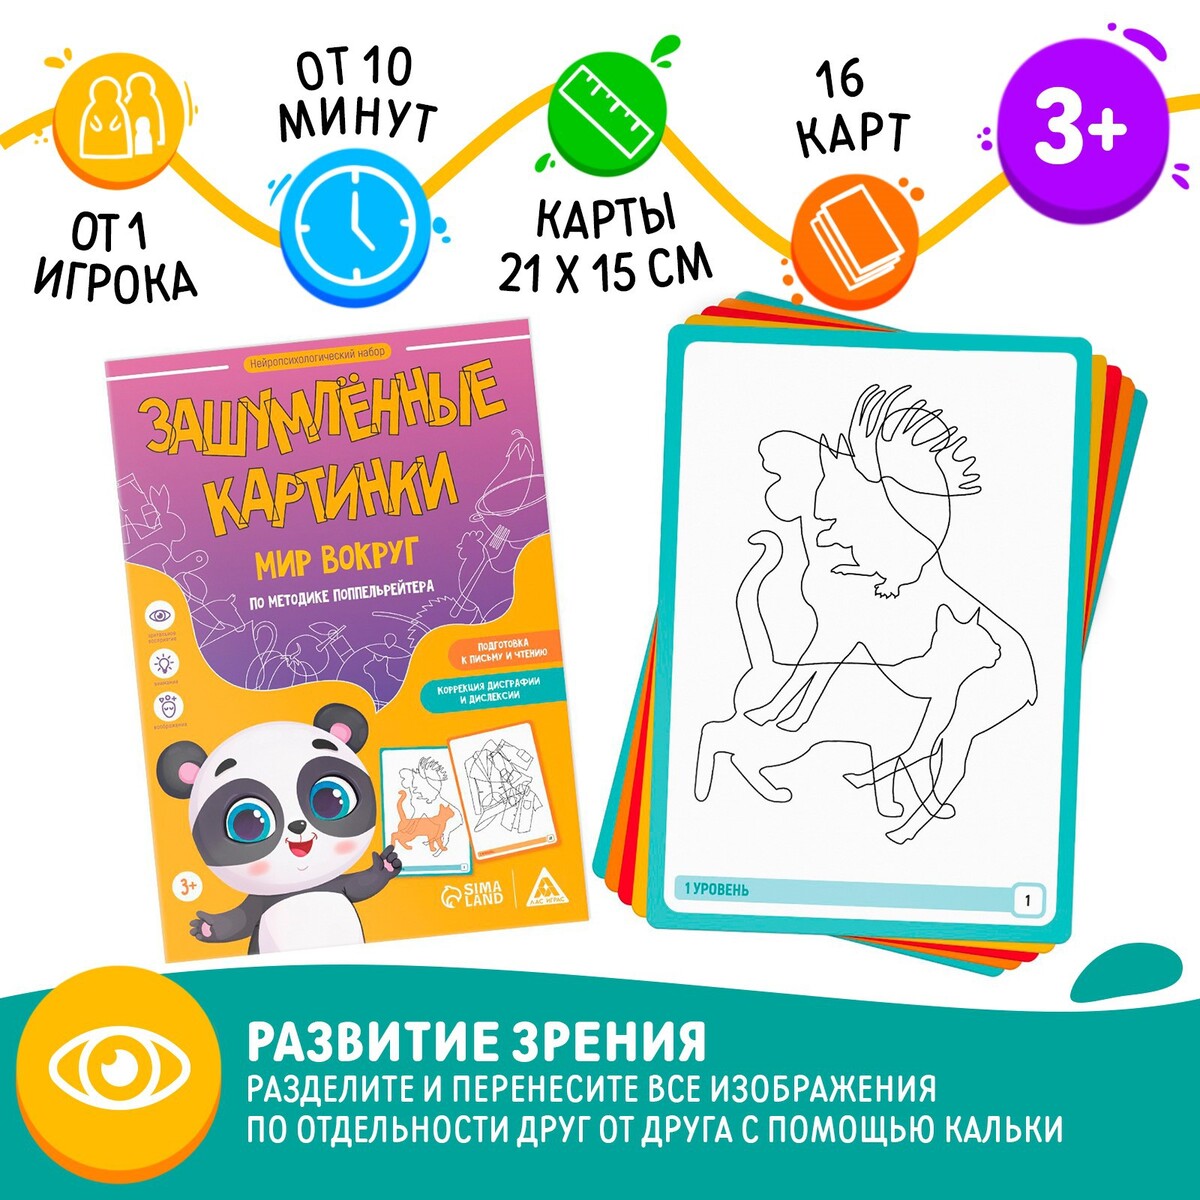 Нейропсихологический набор контрольные работы и тесты по русскому языку элементарный и базовый уровни владения языком